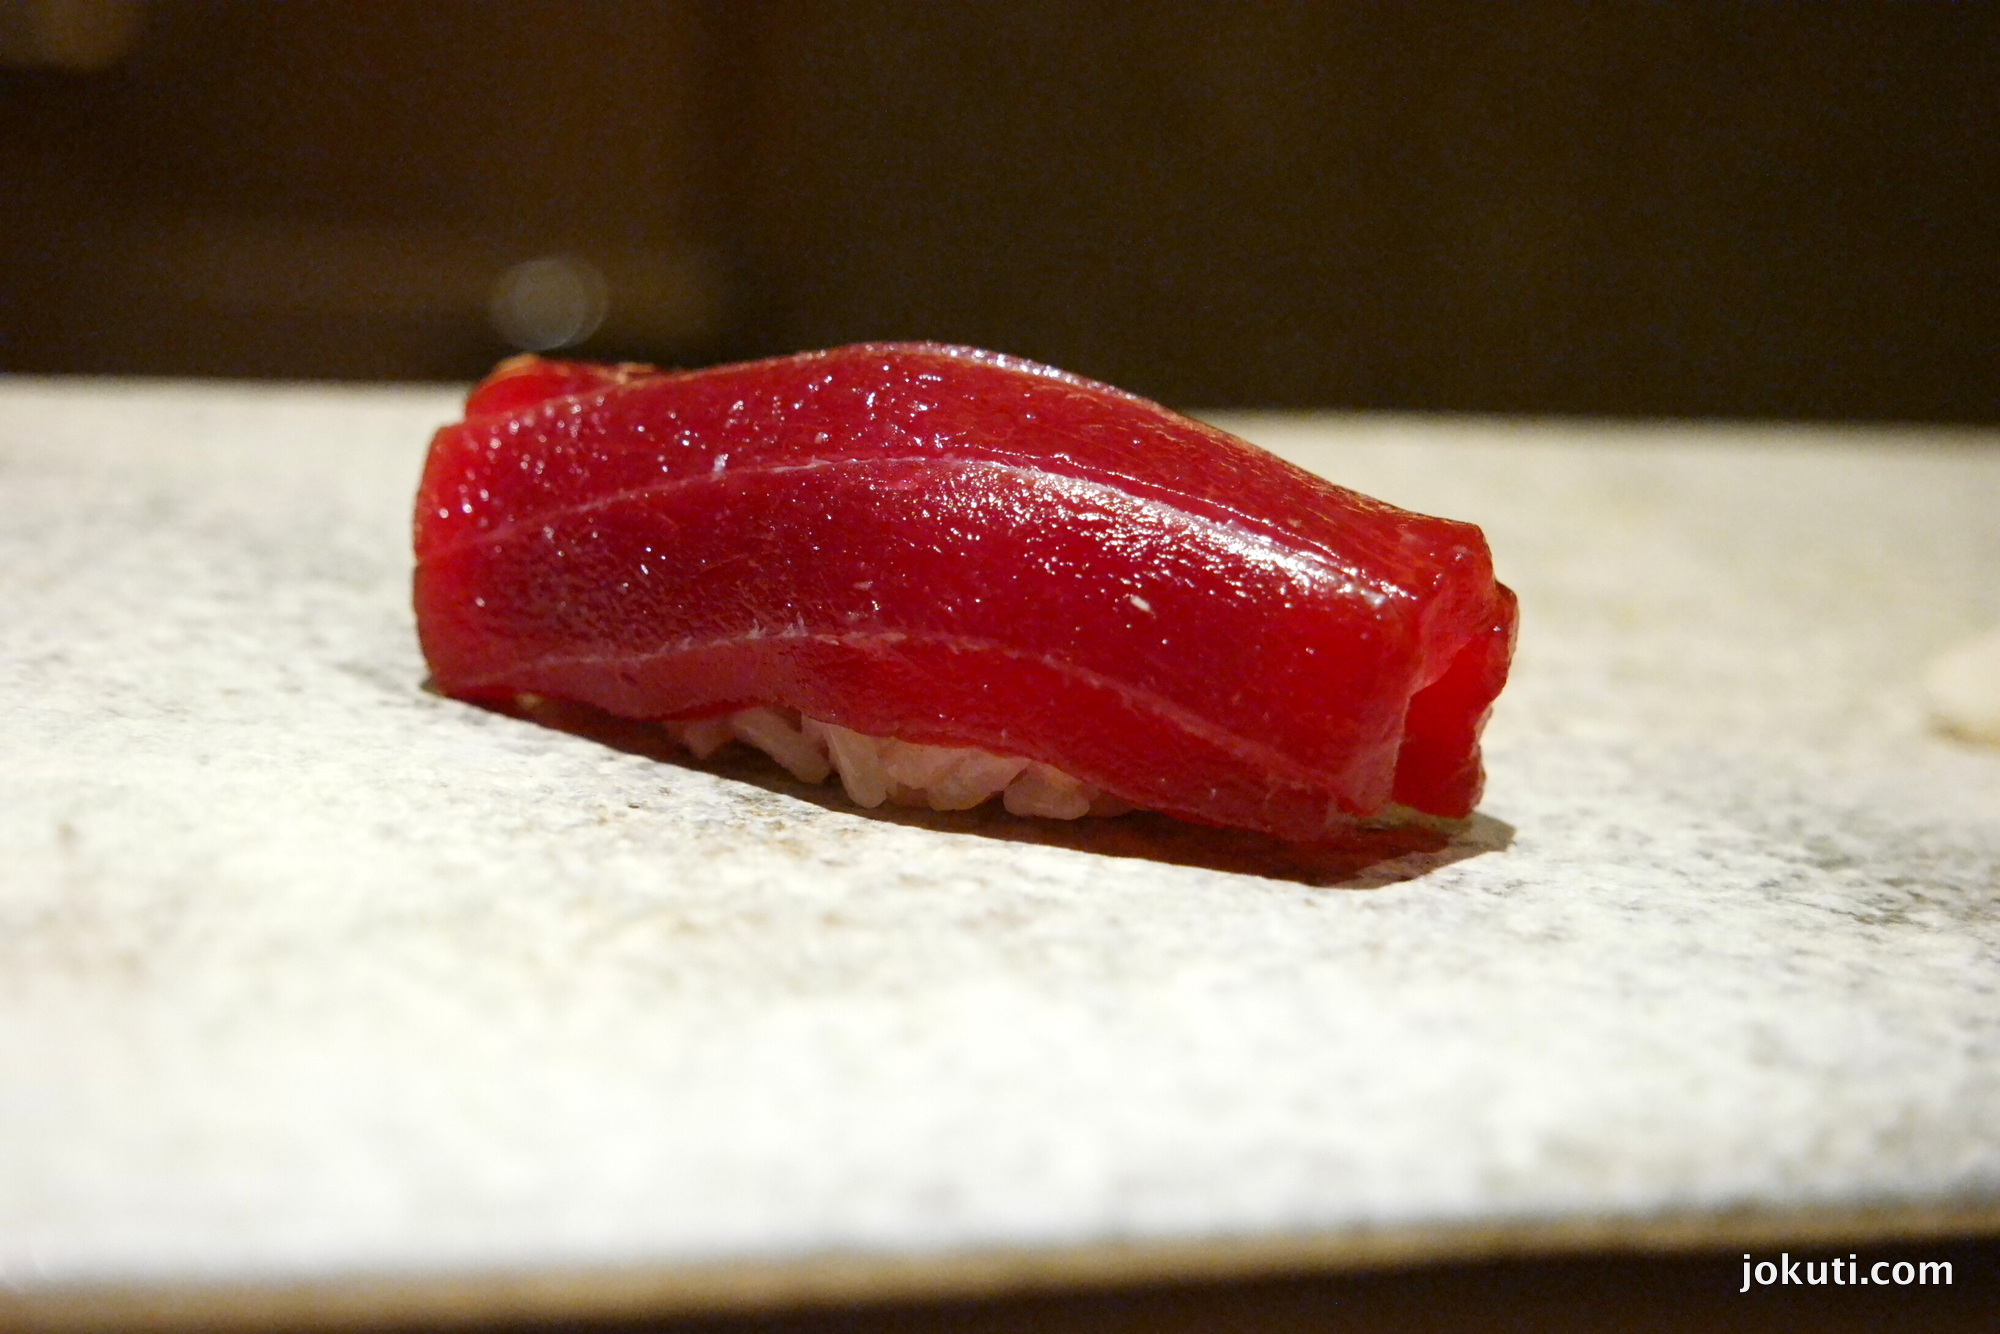 Akami zuke (kékúszójú tonhal hasaaljának a legkevésbé zsíros része, marinálva)<br />